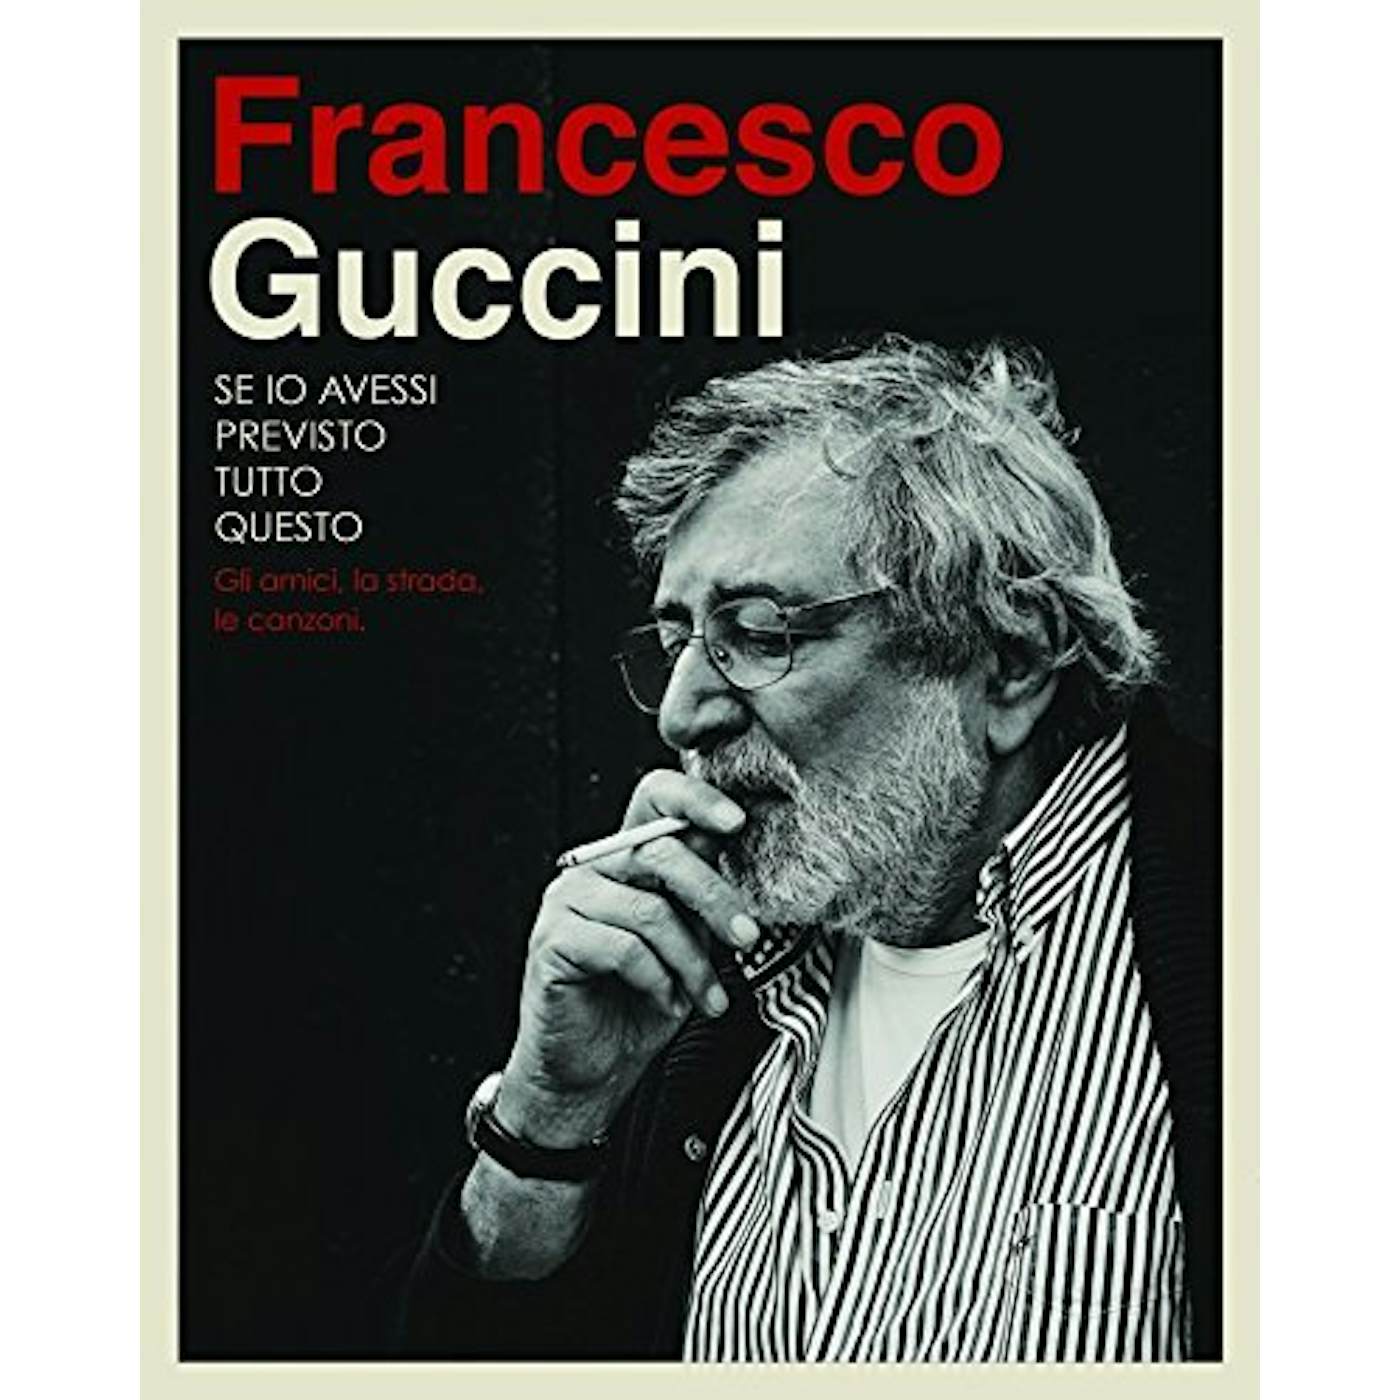 Francesco Guccini SE IO AVESSI PREVISTO TUTTO QUESTO LA STRADA GLI A CD